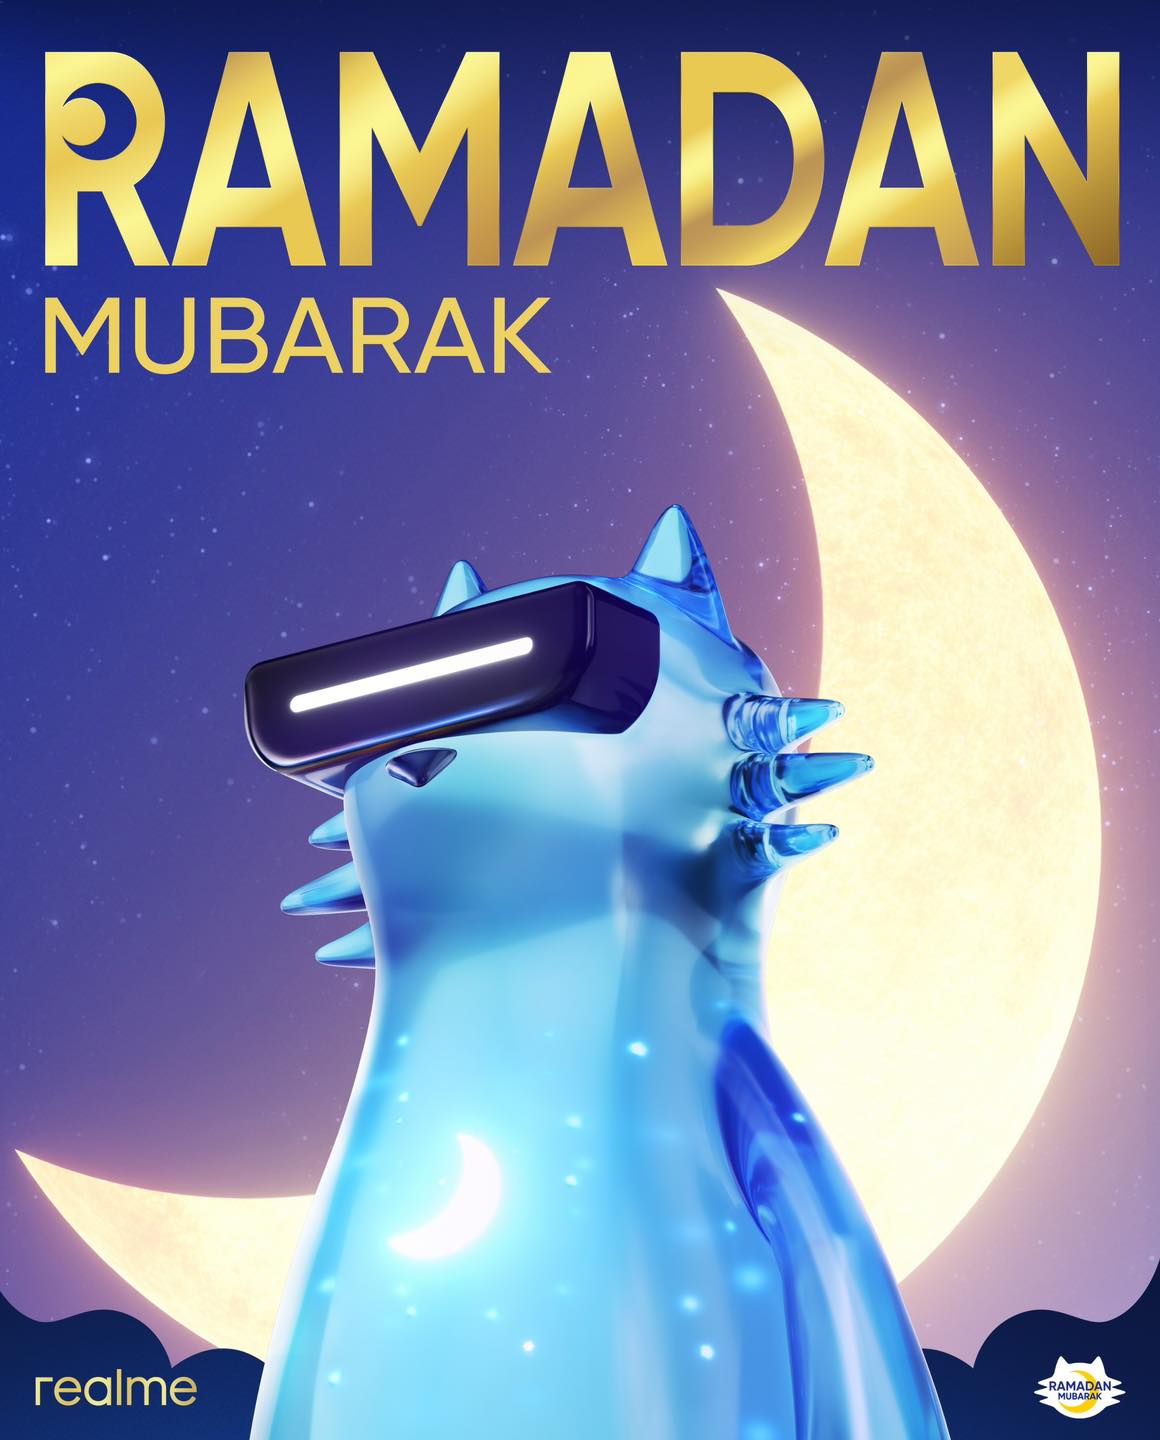 شركة ريلمي تطلق حملة “Capture Ramadan Moonment” في 12 سوقًا عالمية، لالتقاط لحظات الهلال في شهر رمضان المبارك